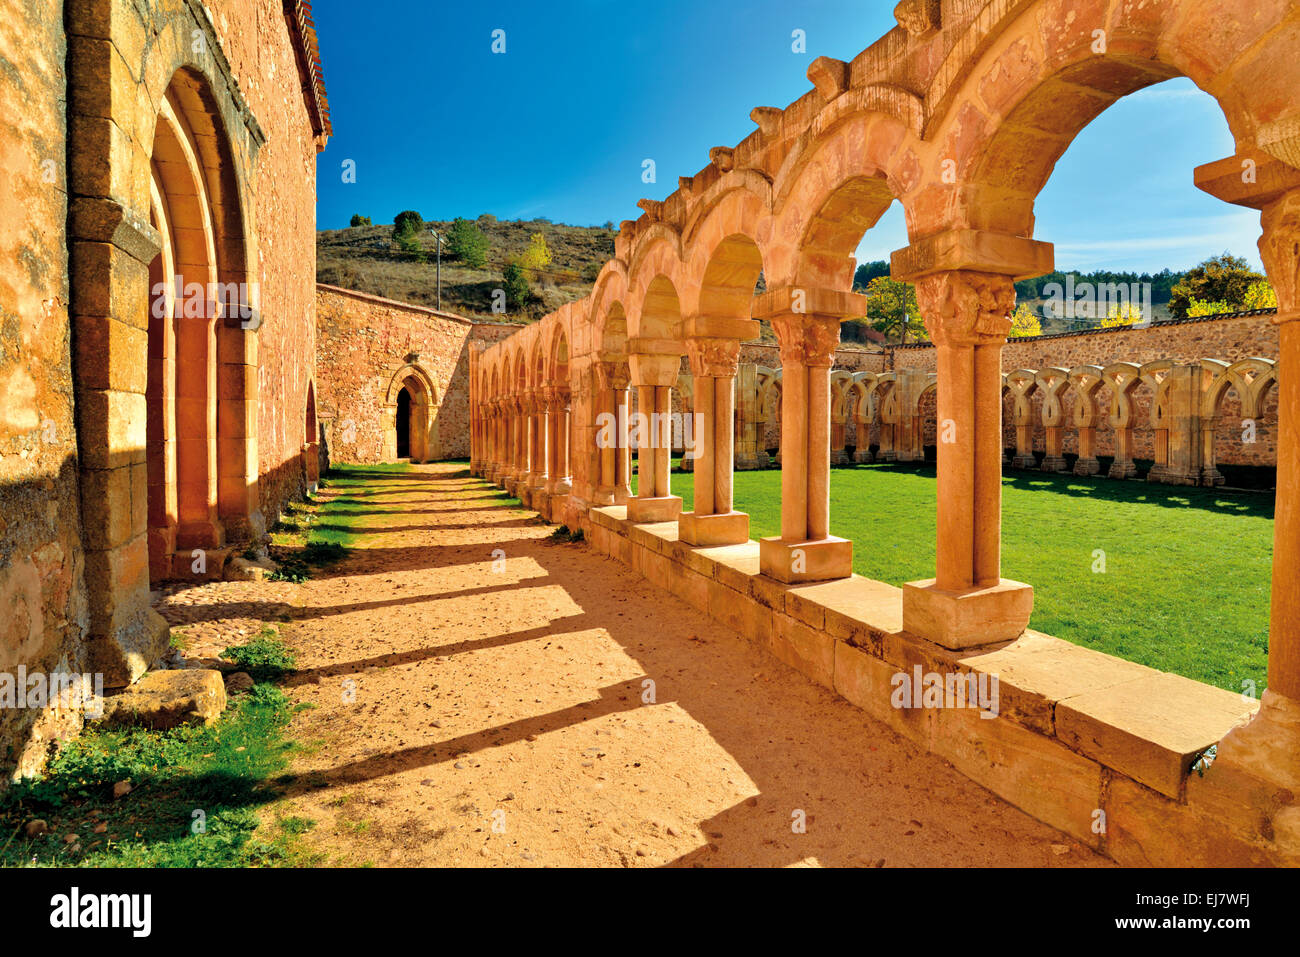 Spanien, Castilla-León: Medievale chiostro del Monastero di San Juan de Duero Foto Stock